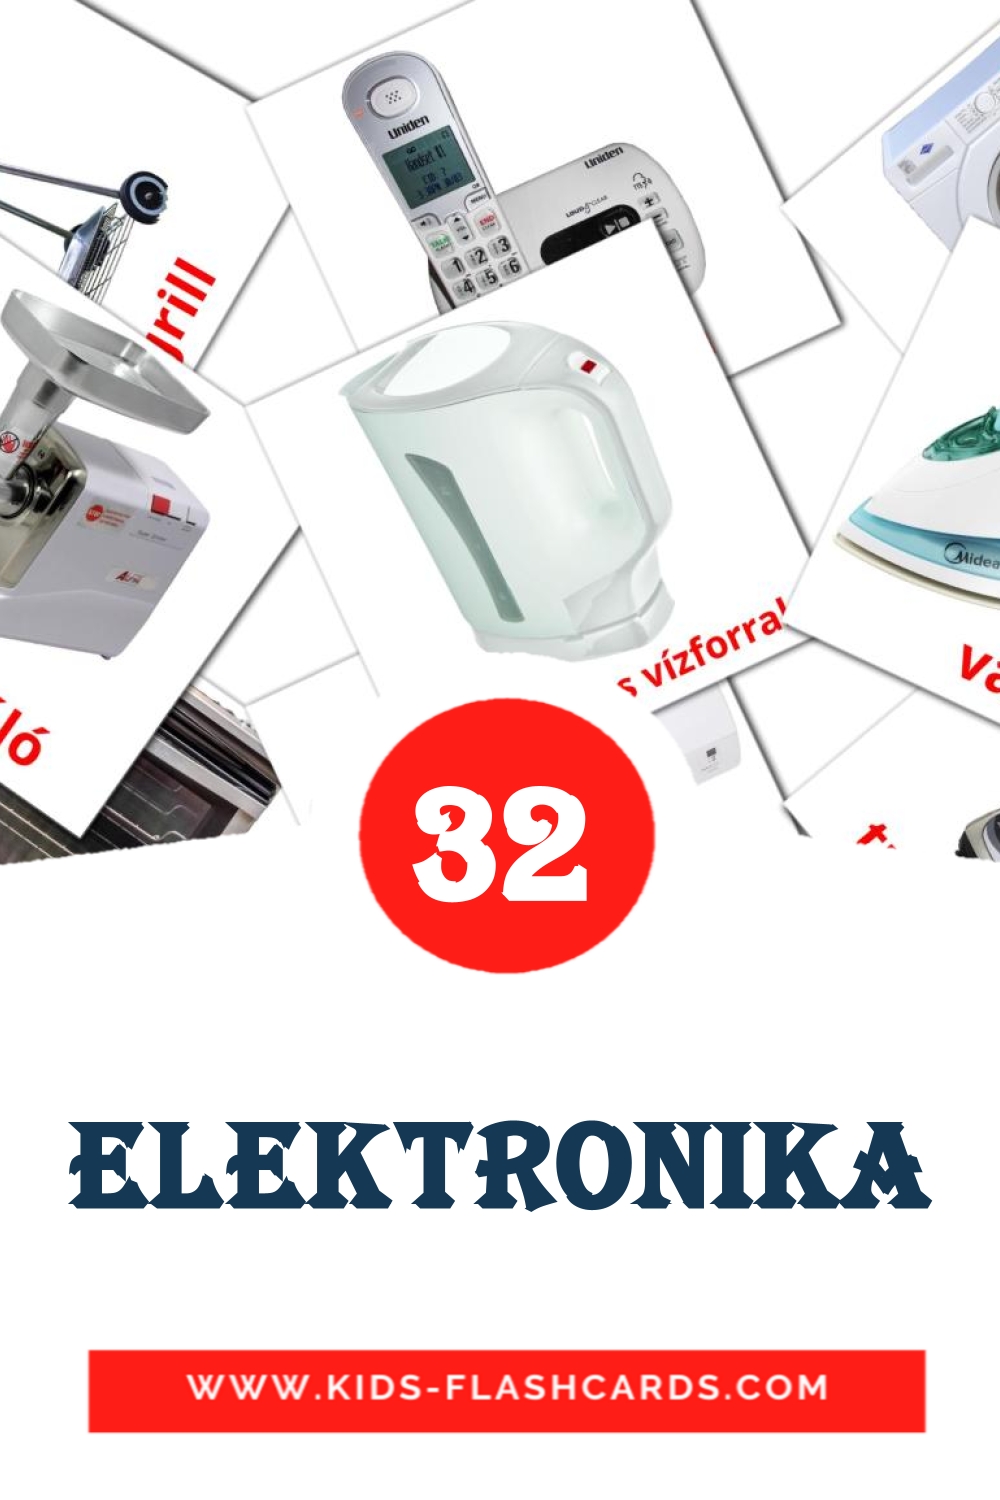 32 Elektronika Bildkarten für den Kindergarten auf Ungarisch